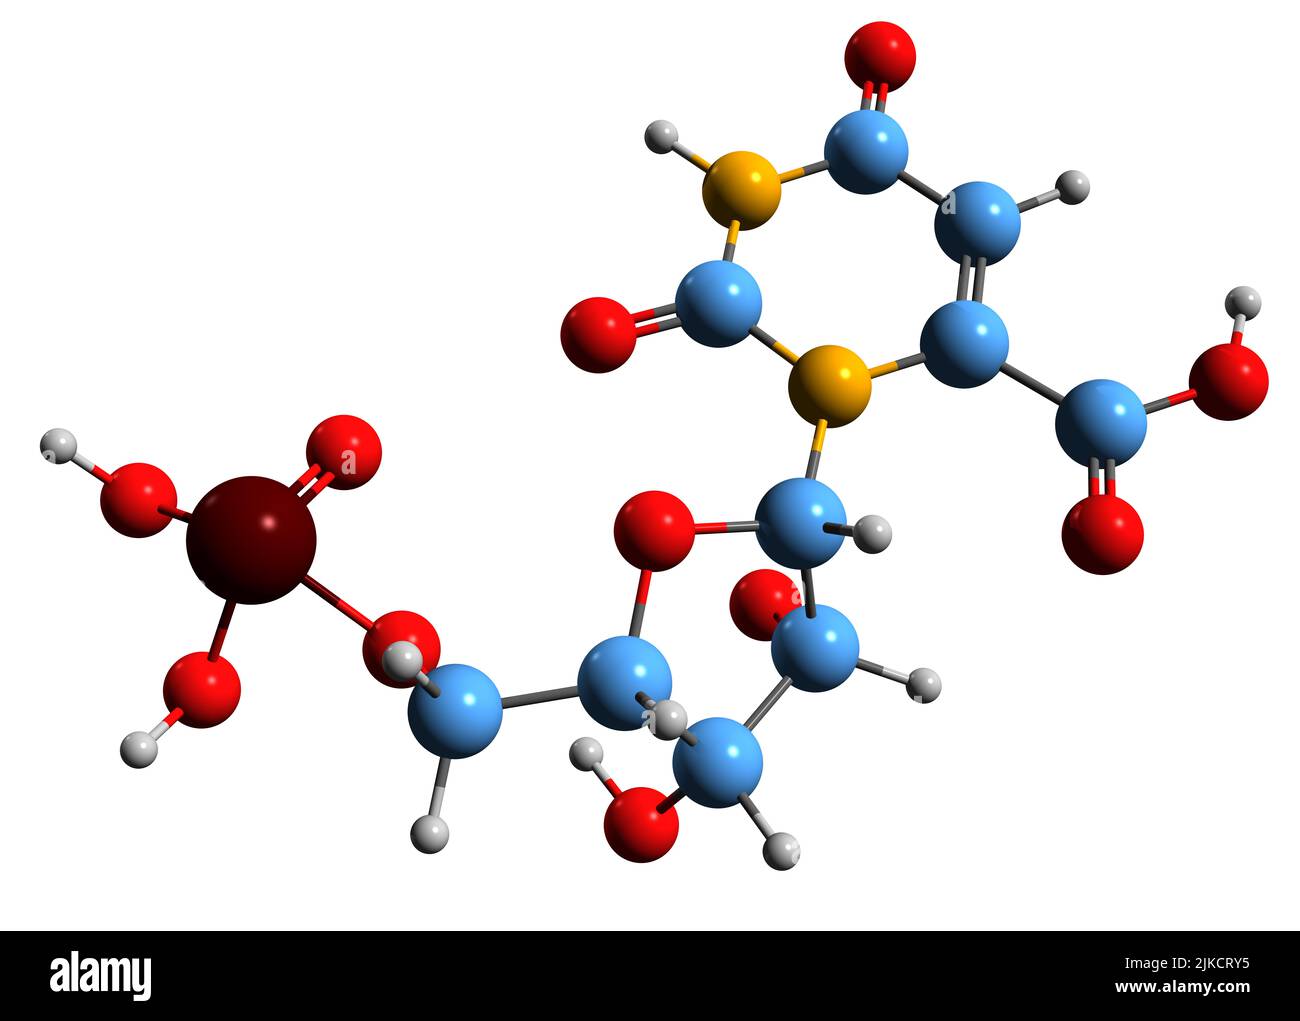 3D image de la formule squelettique de l'orotidine 5-monophosphate - structure chimique moléculaire du nucléotide pyrimidine OMP isolé sur fond blanc Banque D'Images